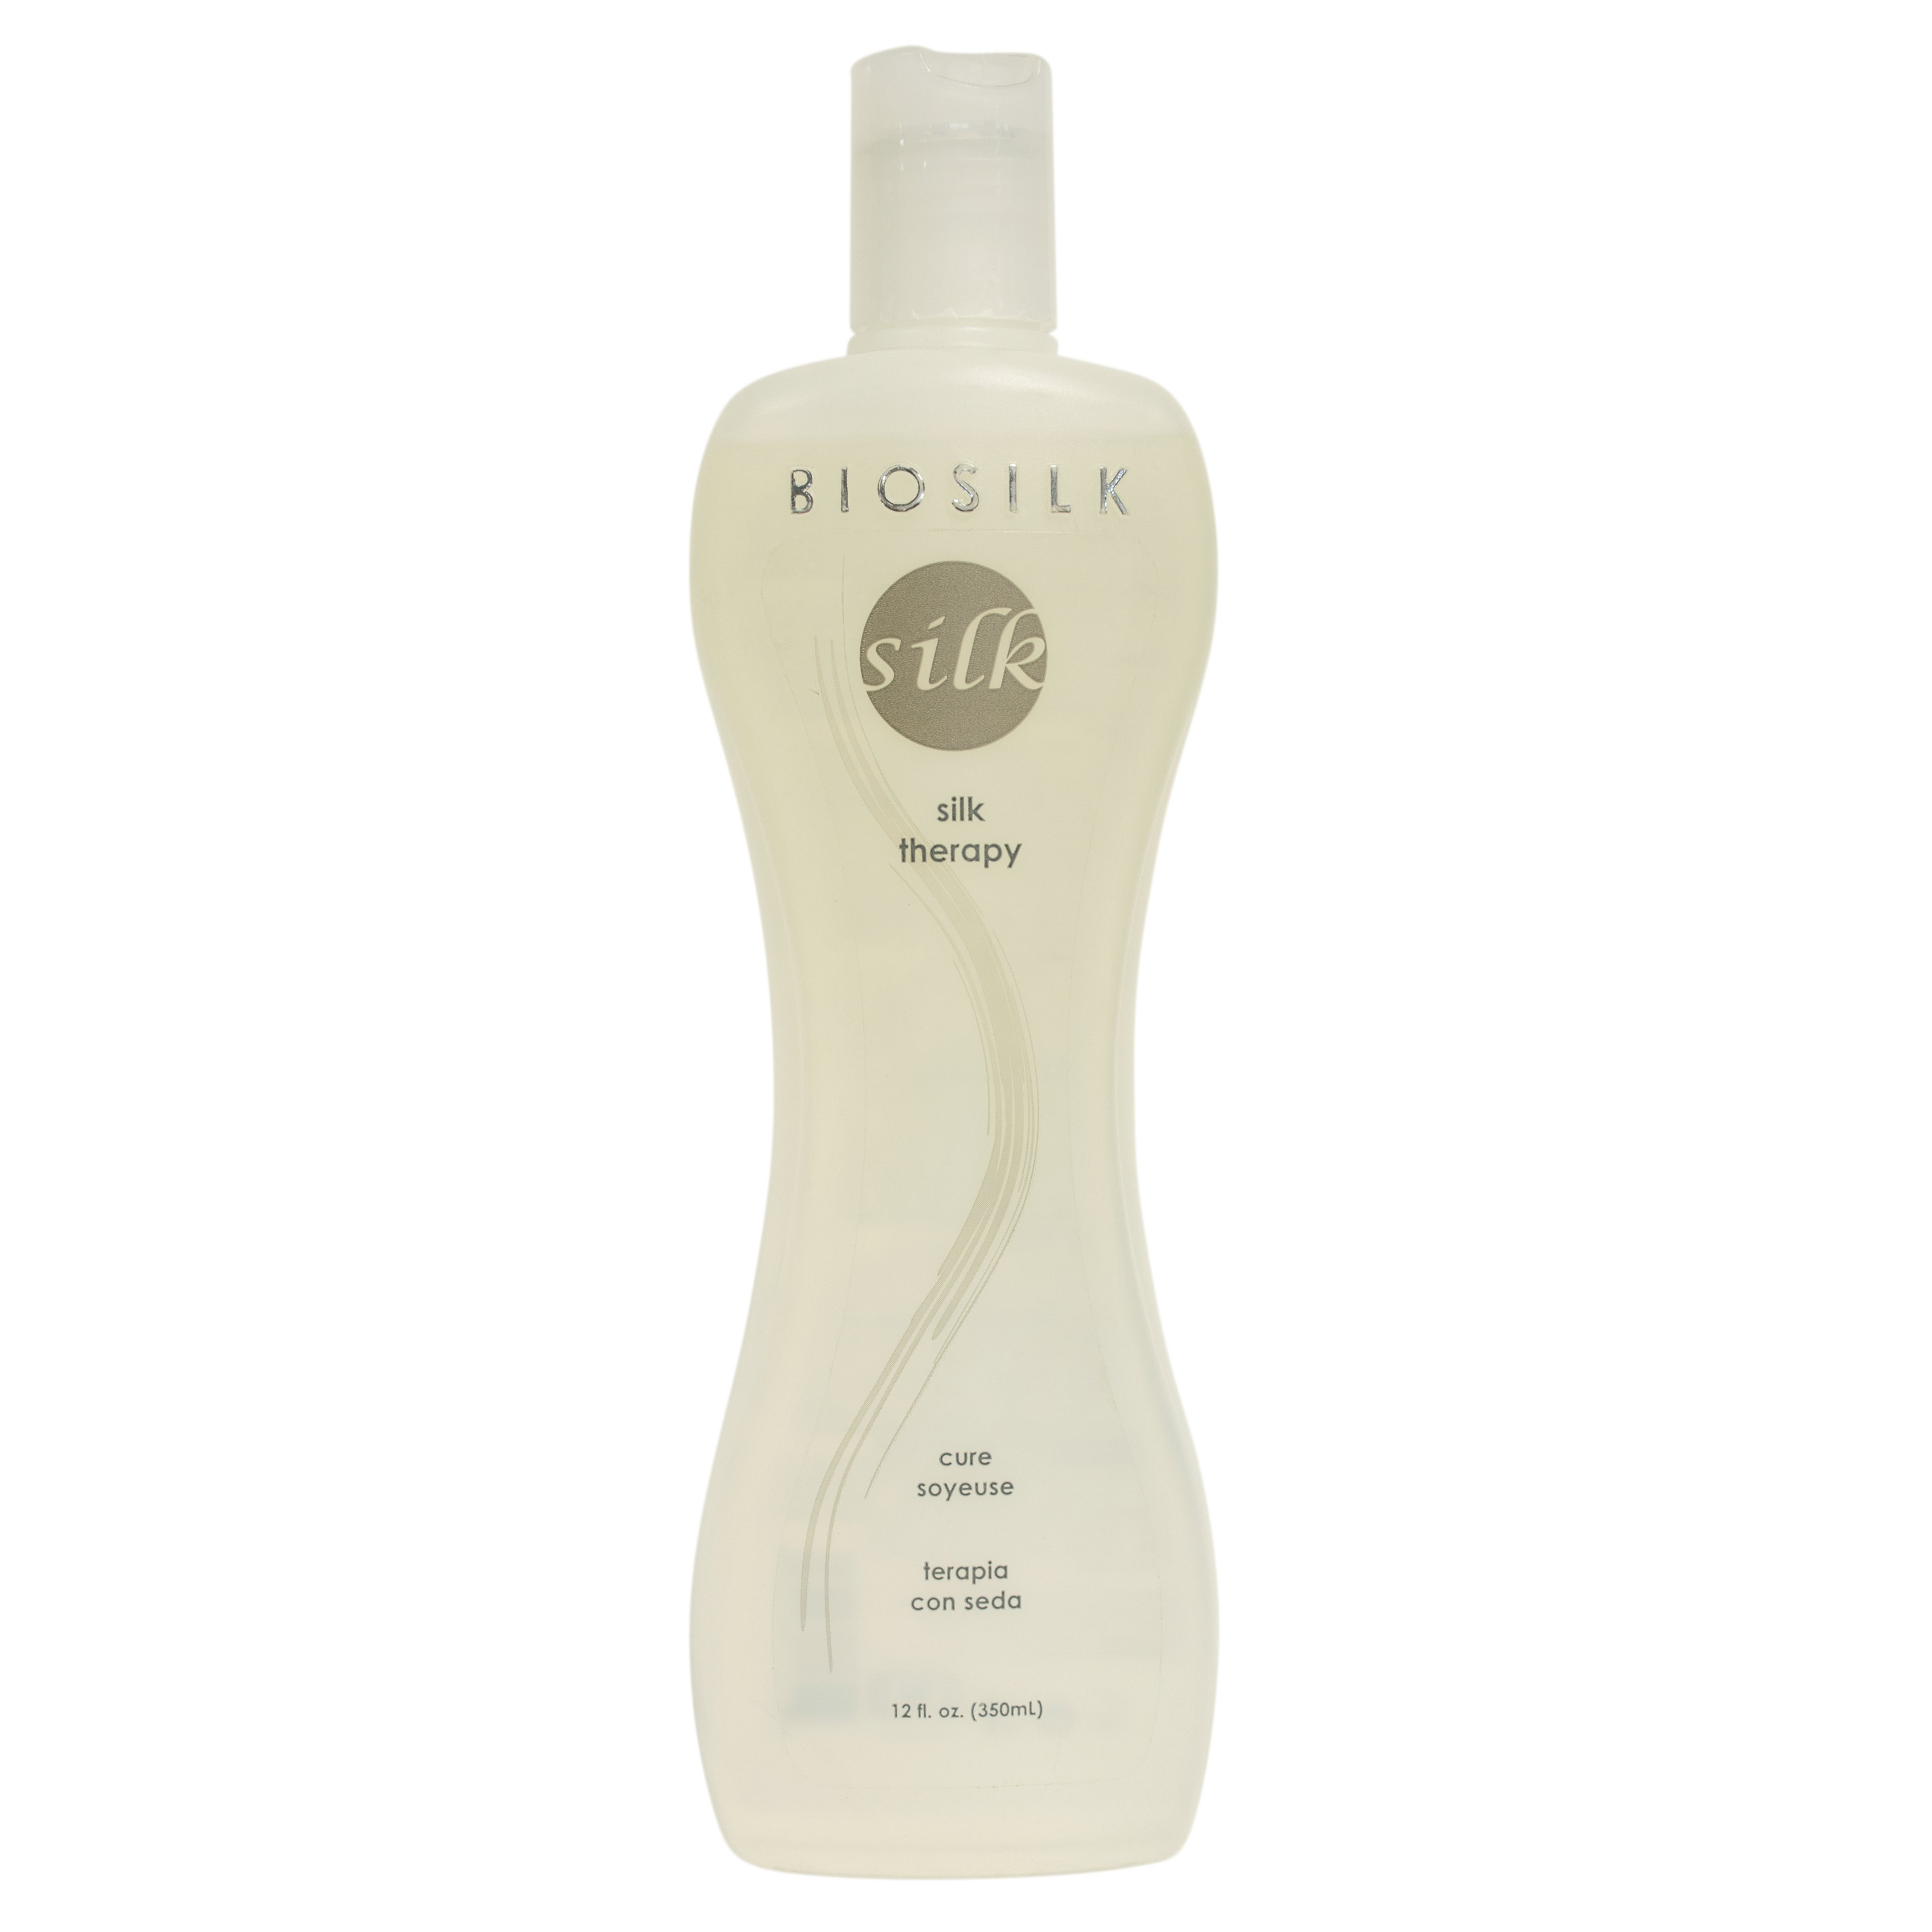 Biosilk Silk Therapy Original Oil Treatment - Shop Shampoo & Conditioner at  H-E-B